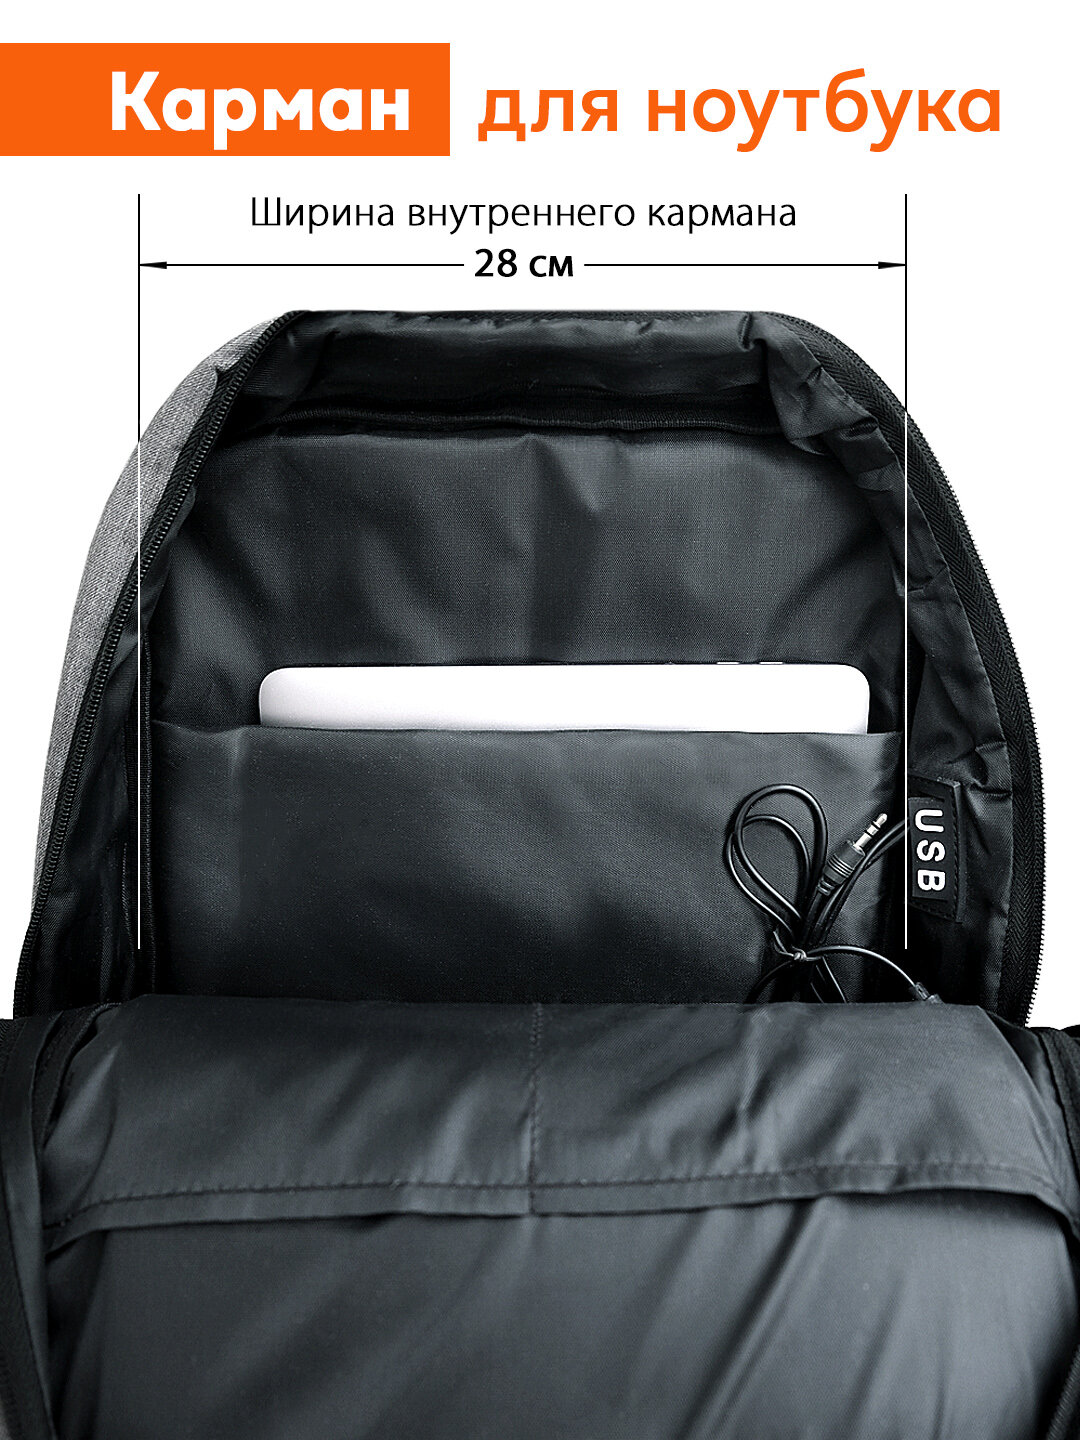 Городской рюкзак универсальный, для ноутбука 15.6, AUX+USB. Серый.